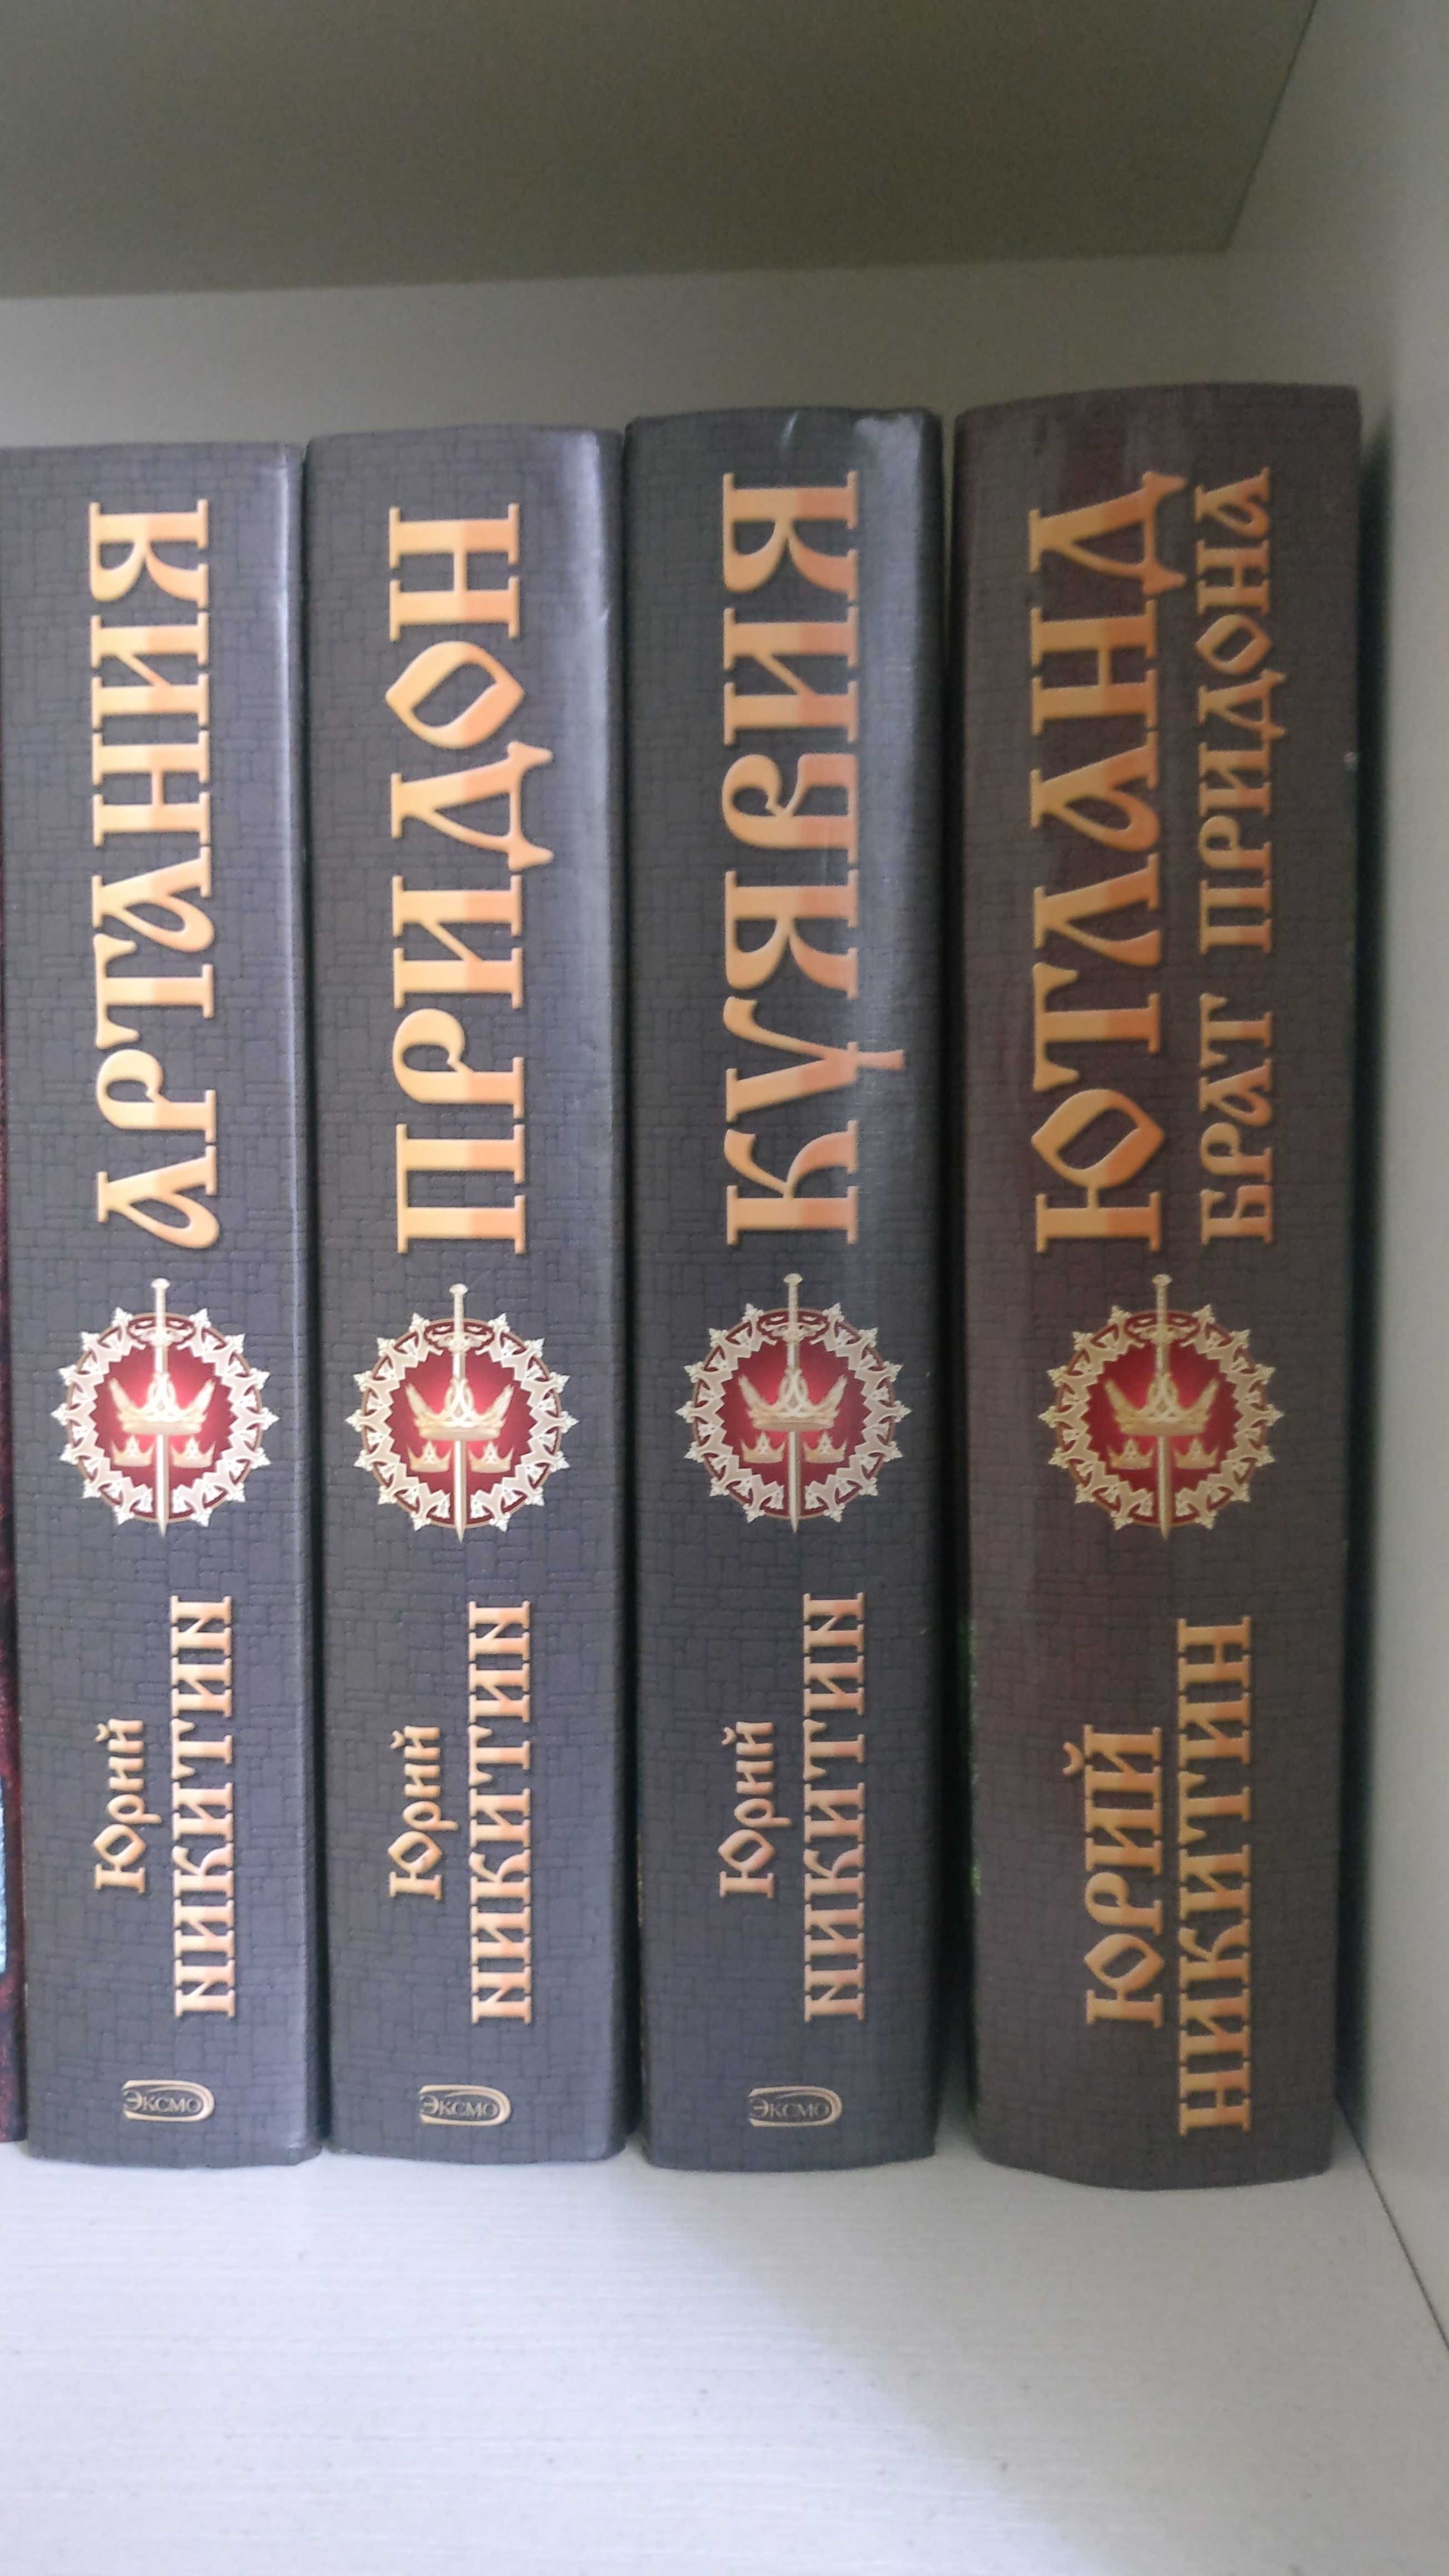 Фантастические романы Ю.Никитина из цикла Троецарствие, (4 тома)